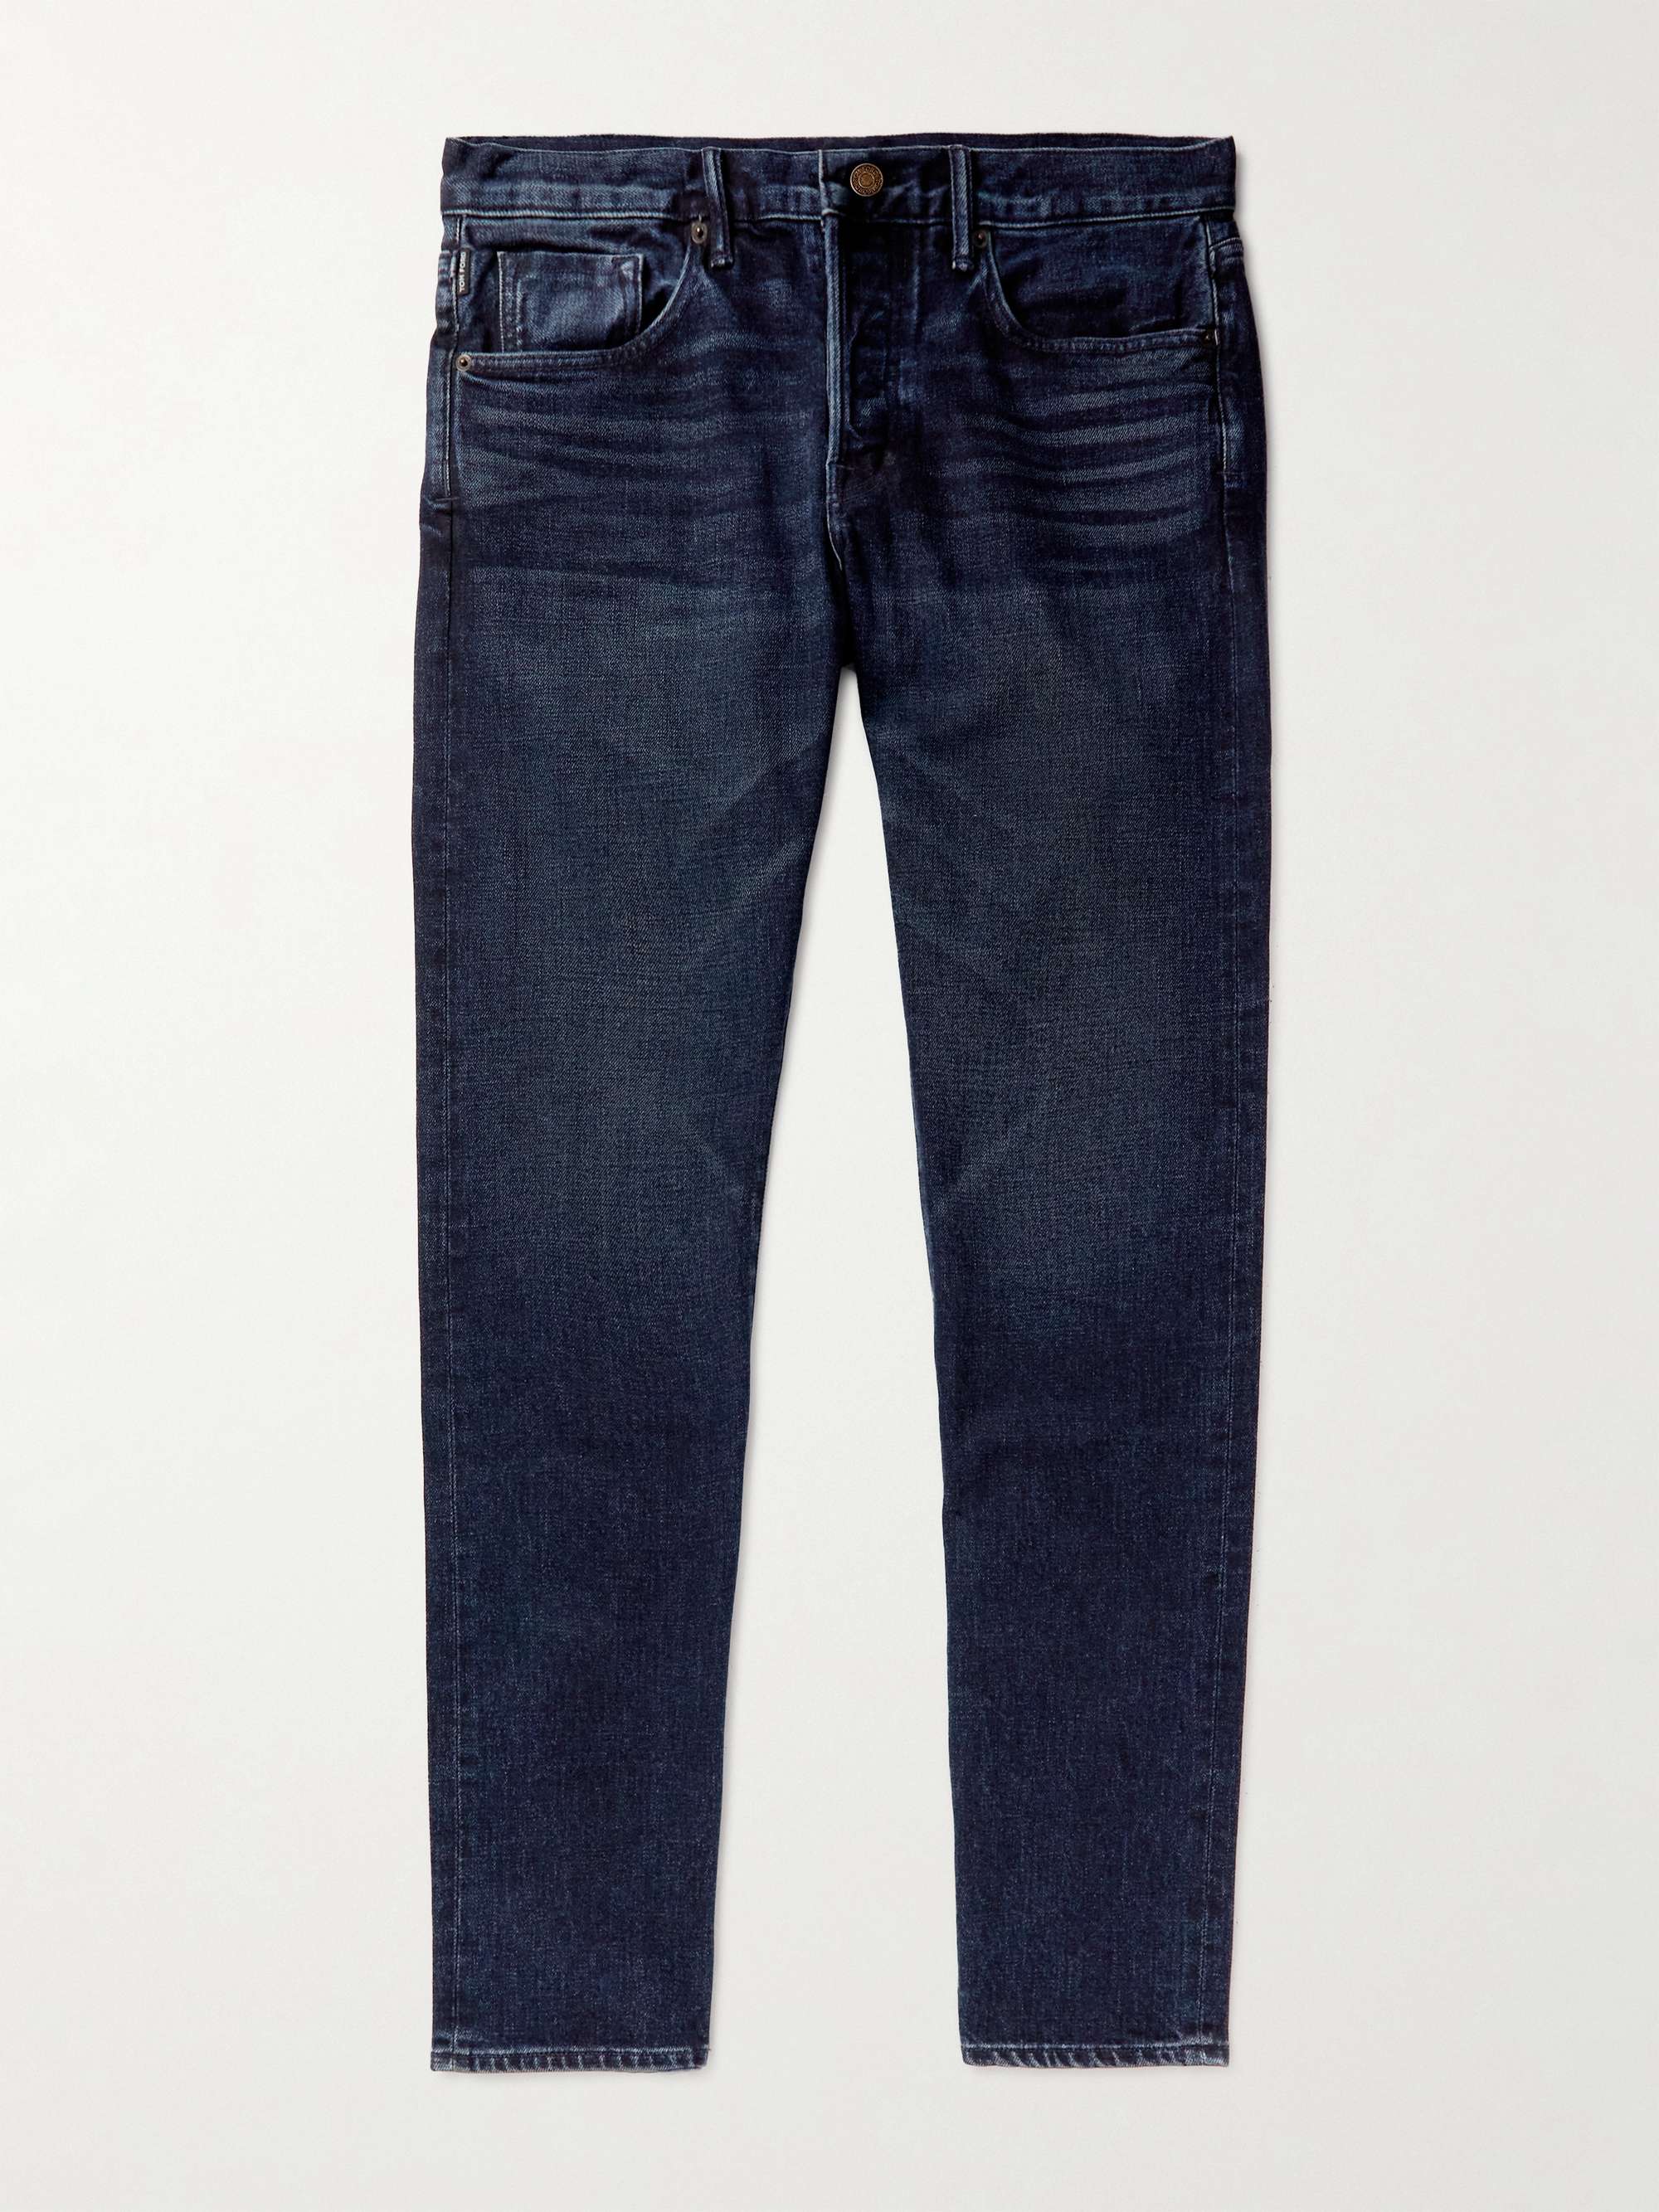 TOM FORD Straight-Leg Garment-Dyed Selvedge Jeans for Men | MR PORTER